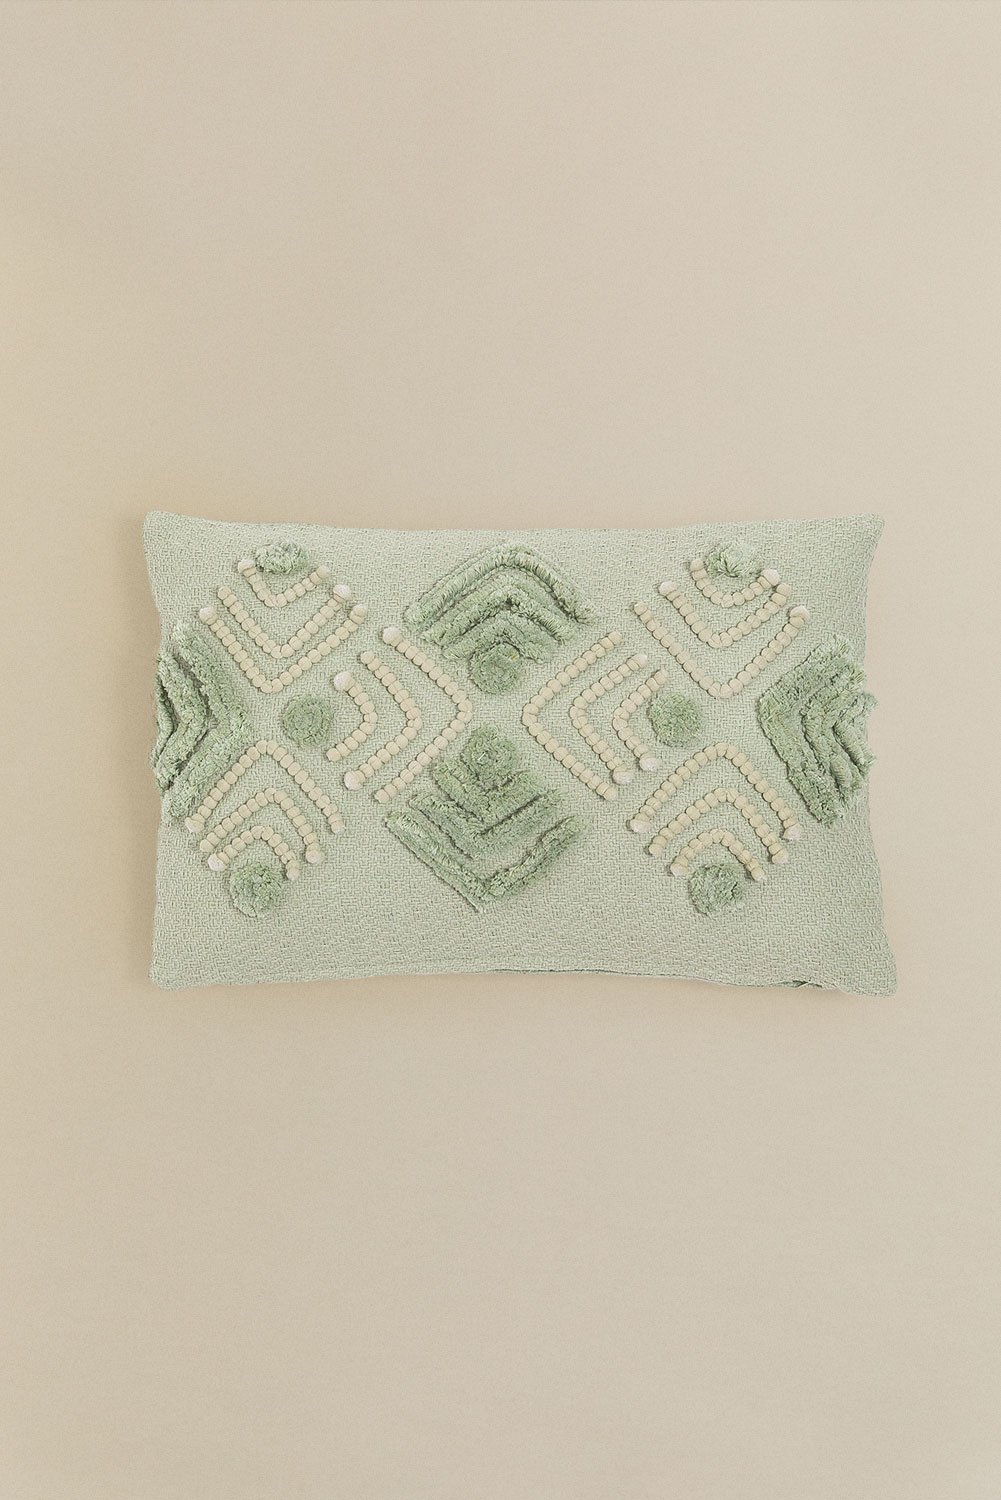 Cuscino ricamato in cotone (30x45 cm) Efra, immagine della galleria 1